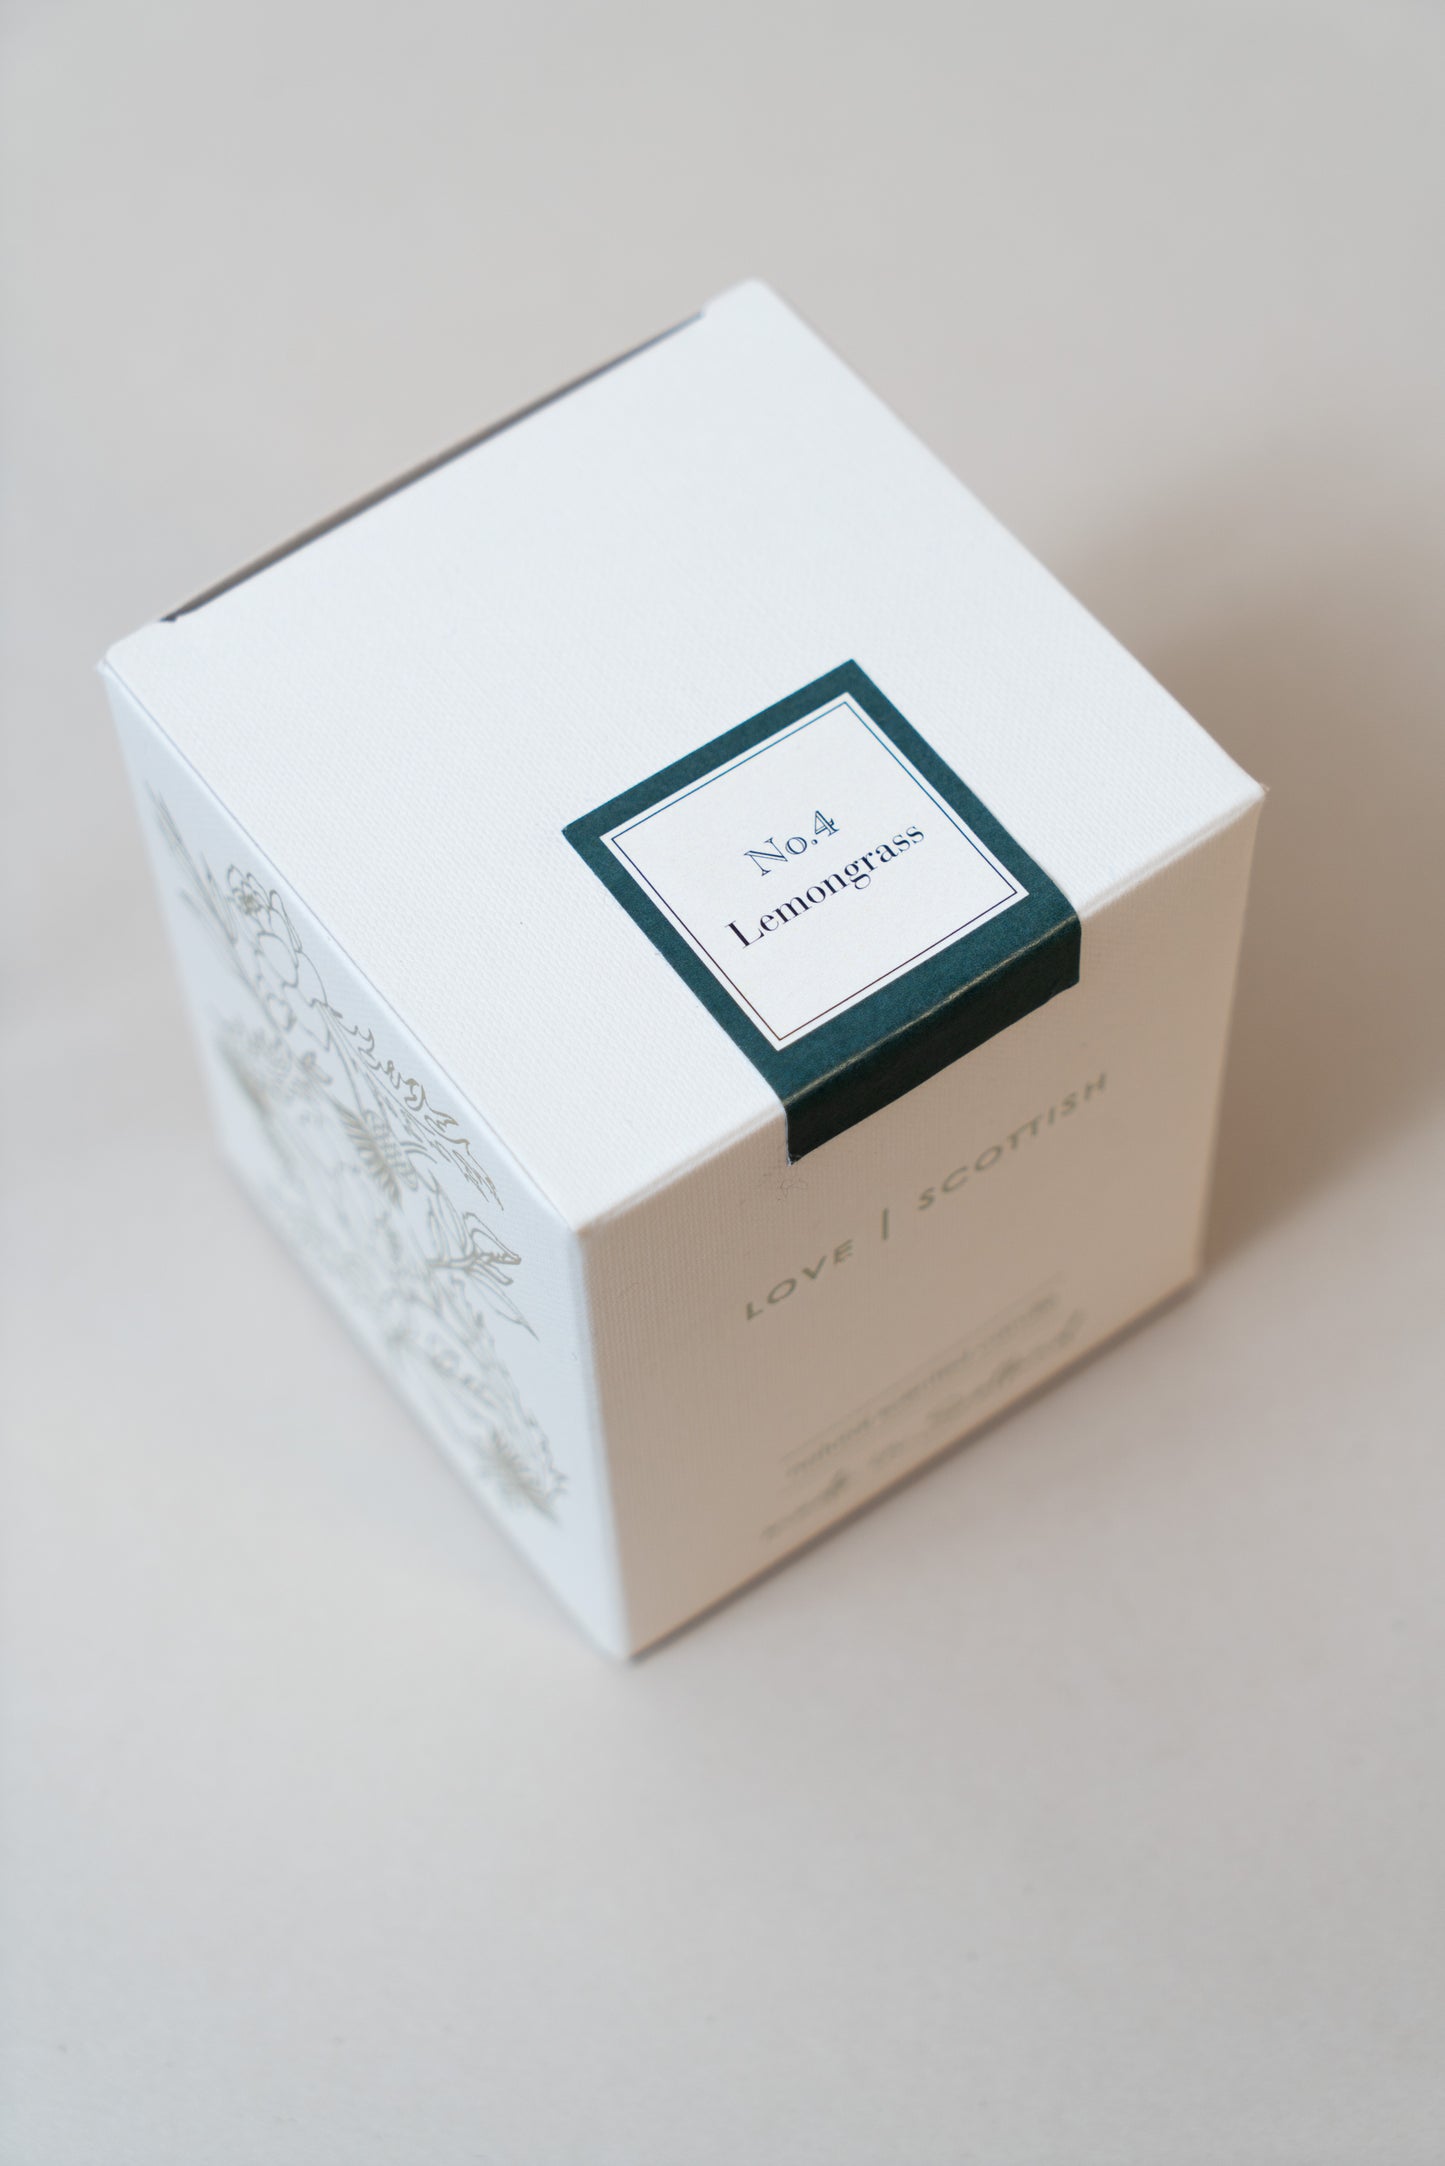 Lemongrass  Medium/Large Candle Box on a white background